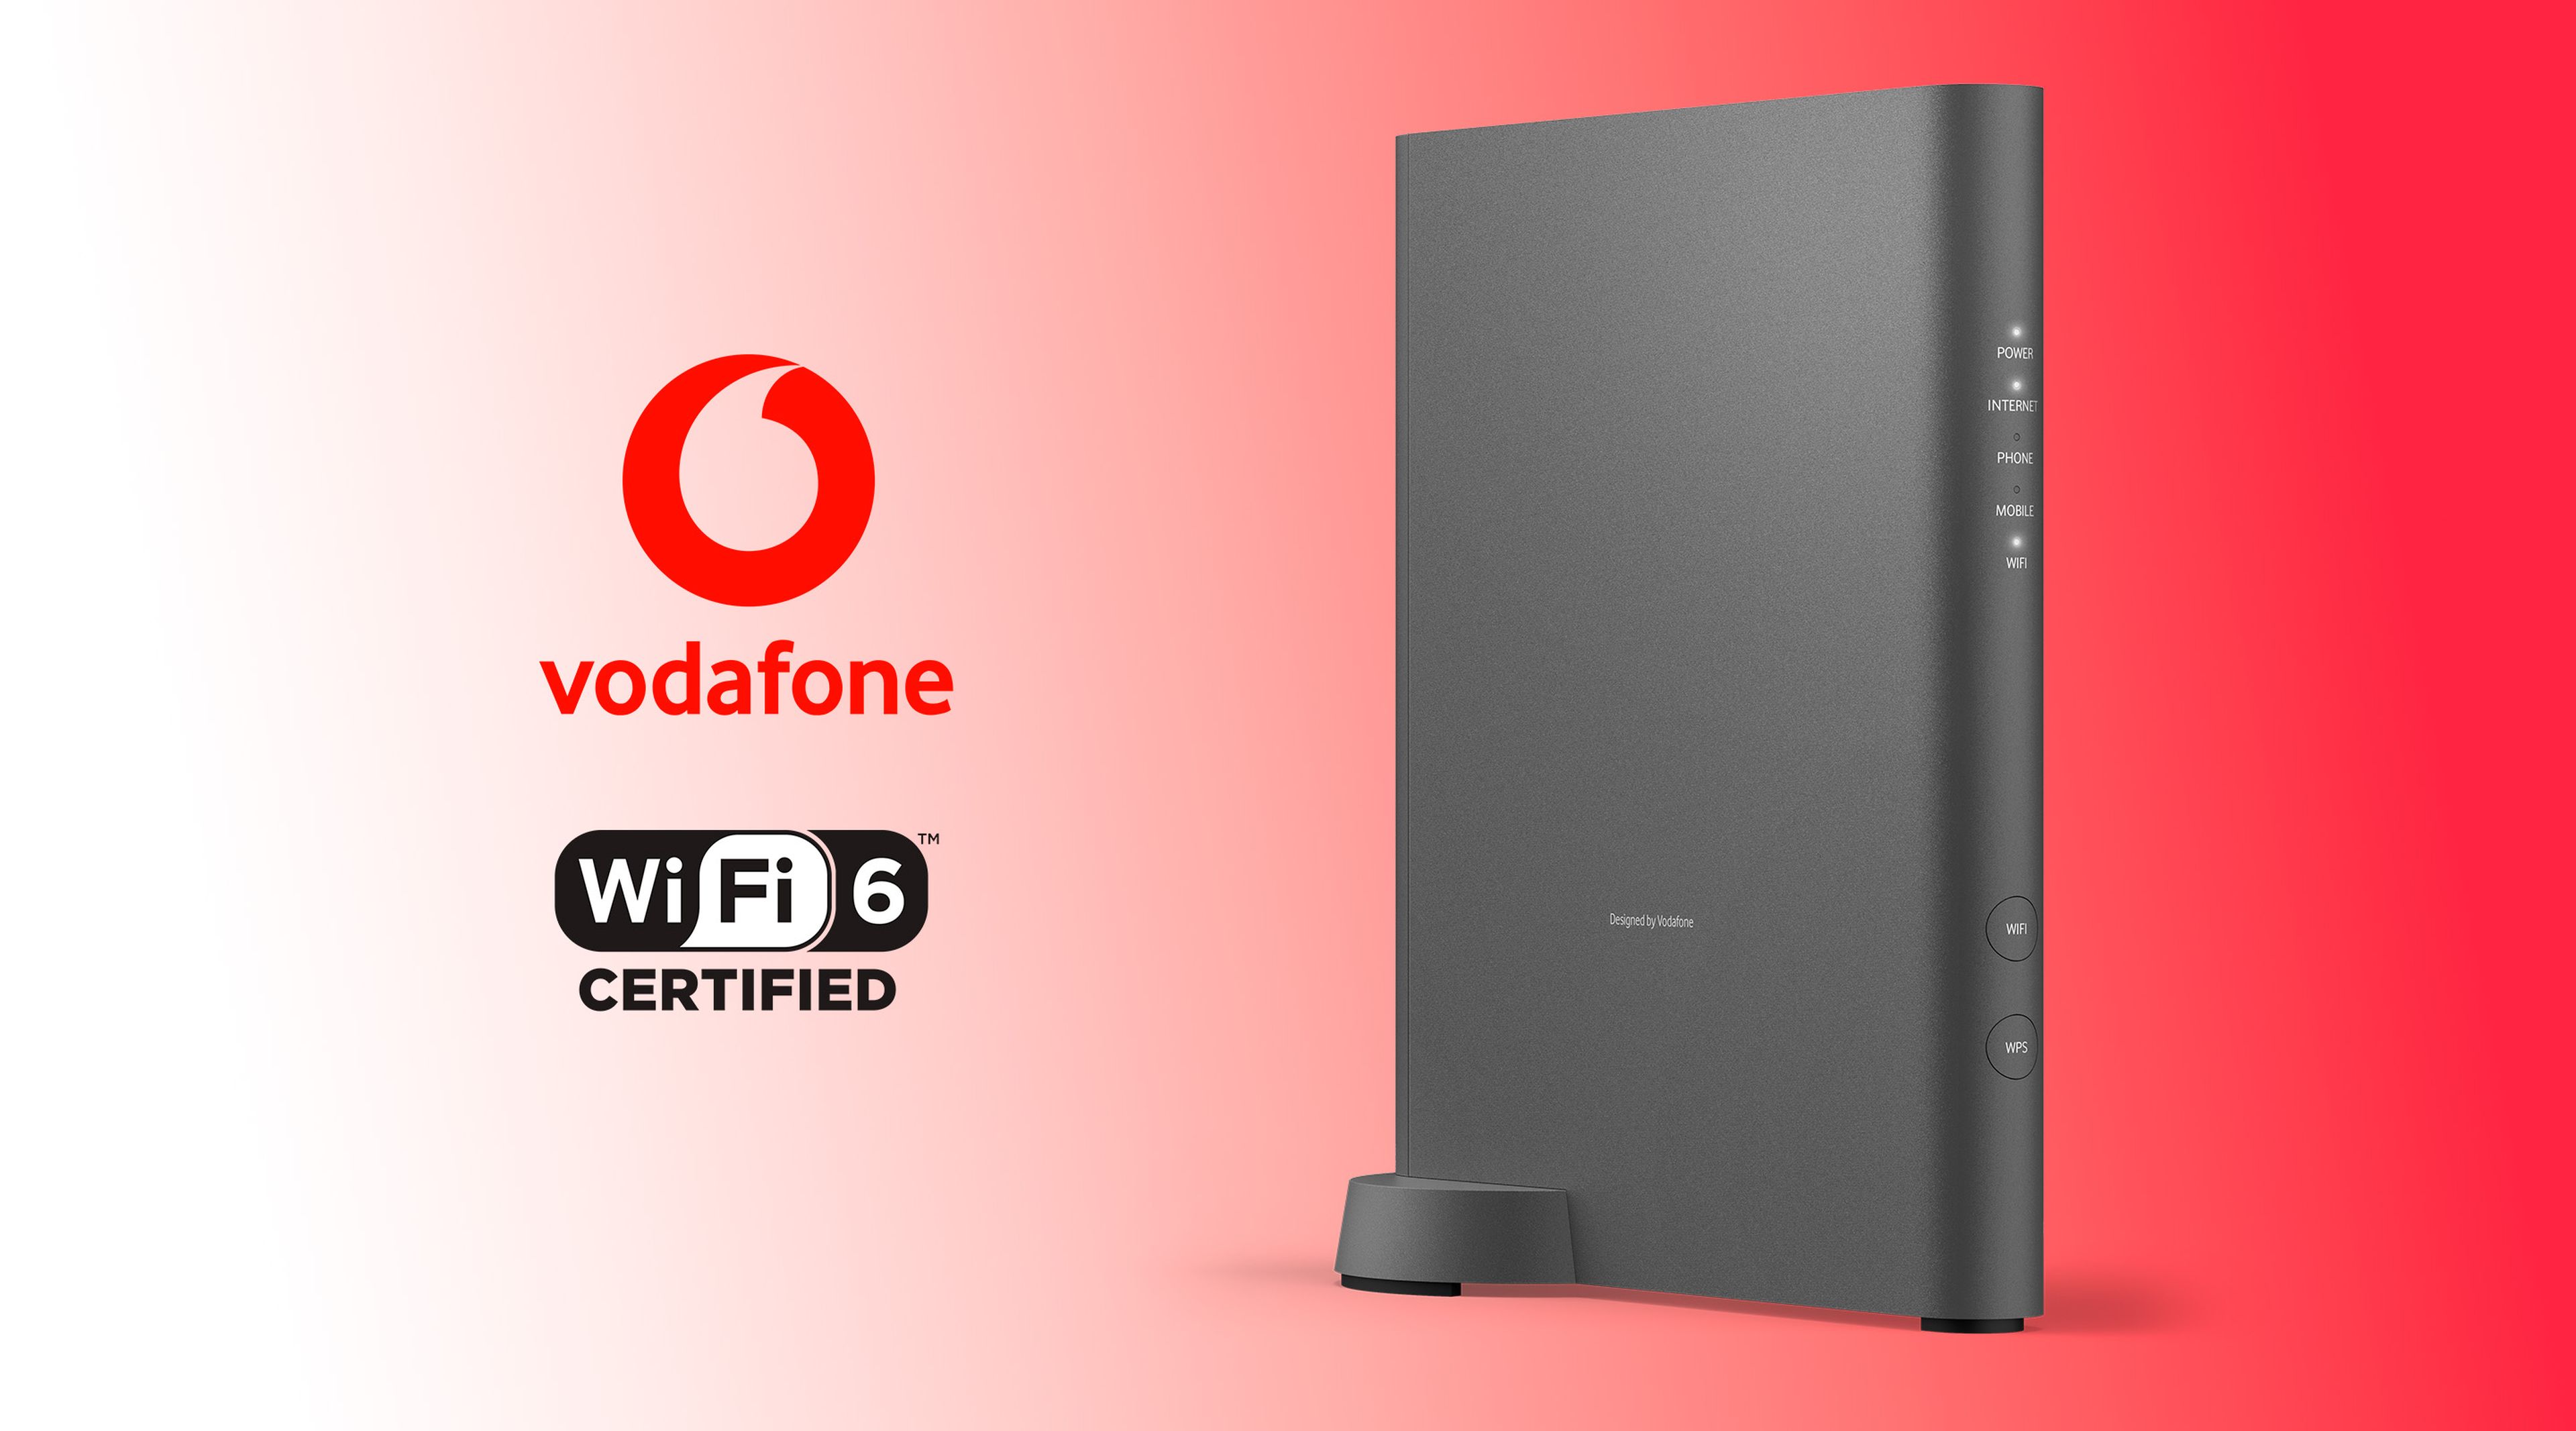 Medición haz apetito Vodafone presenta sus routers con WiFi 6: 4 veces más rápido que los  normales. | Computer Hoy